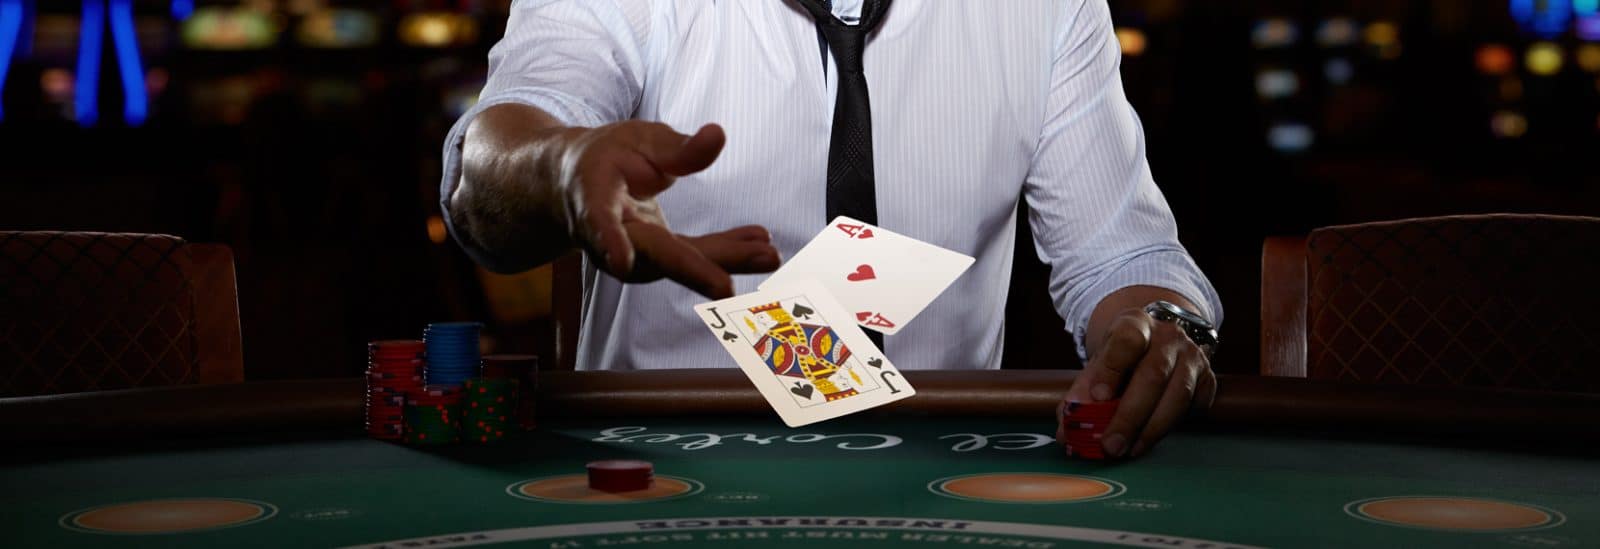 jogo de casino online com cartas de jogar, roleta e fichas de